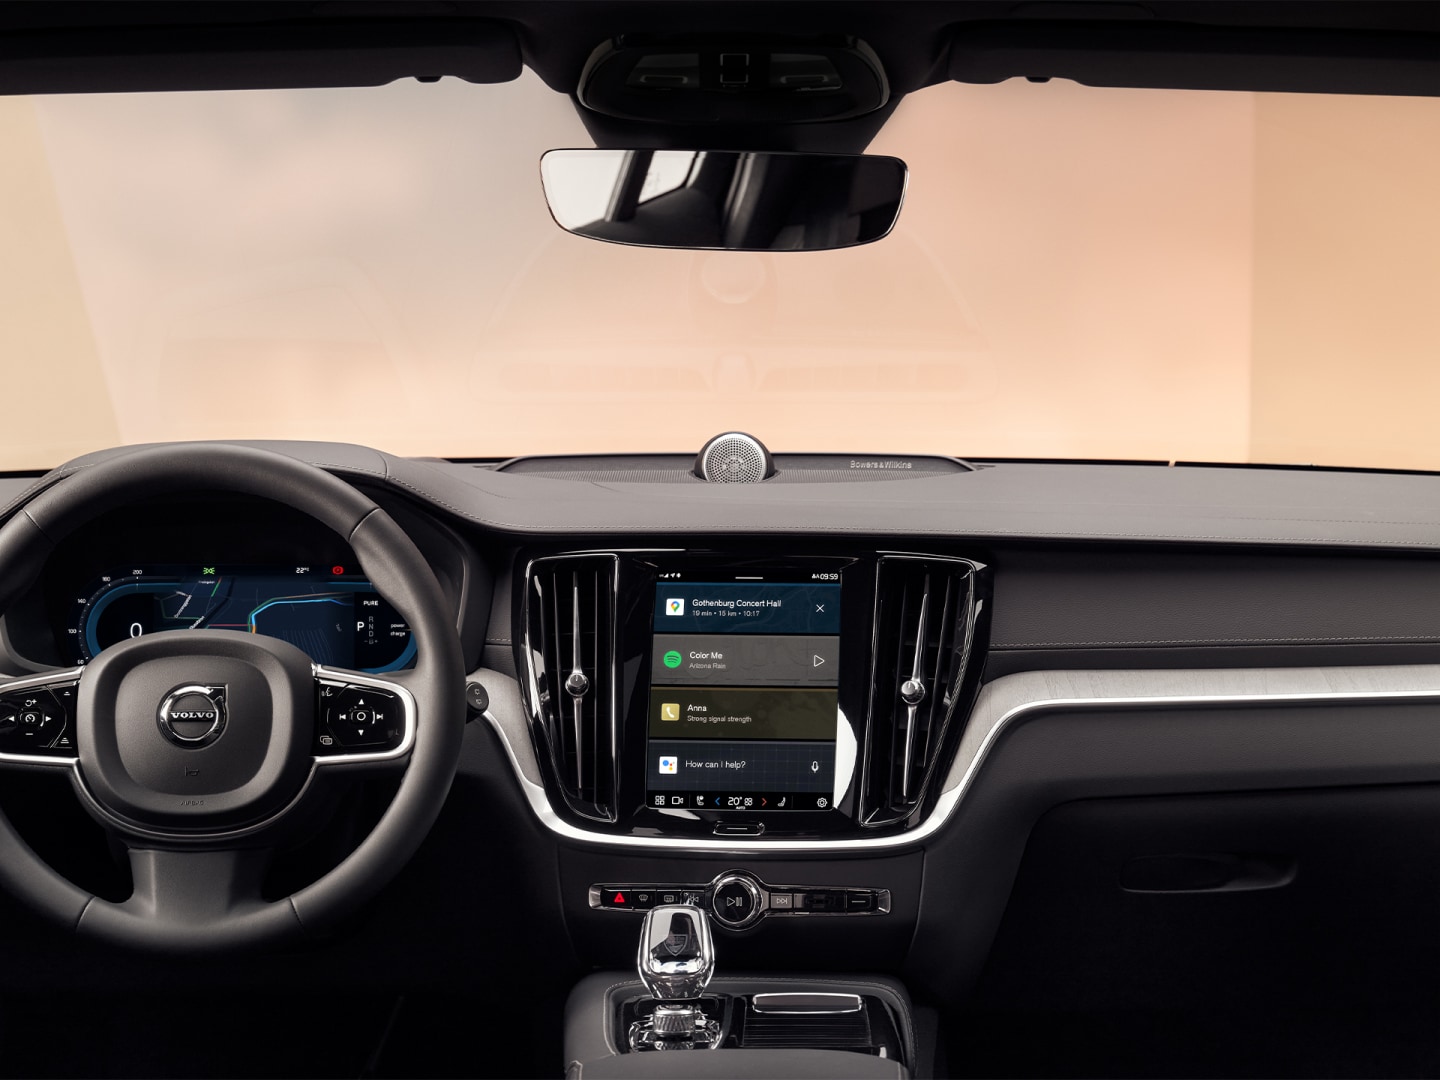 Stuur, instrumentenpaneel en touchscreen voor infotainment van de Volvo V60 Plug-in hybrid.